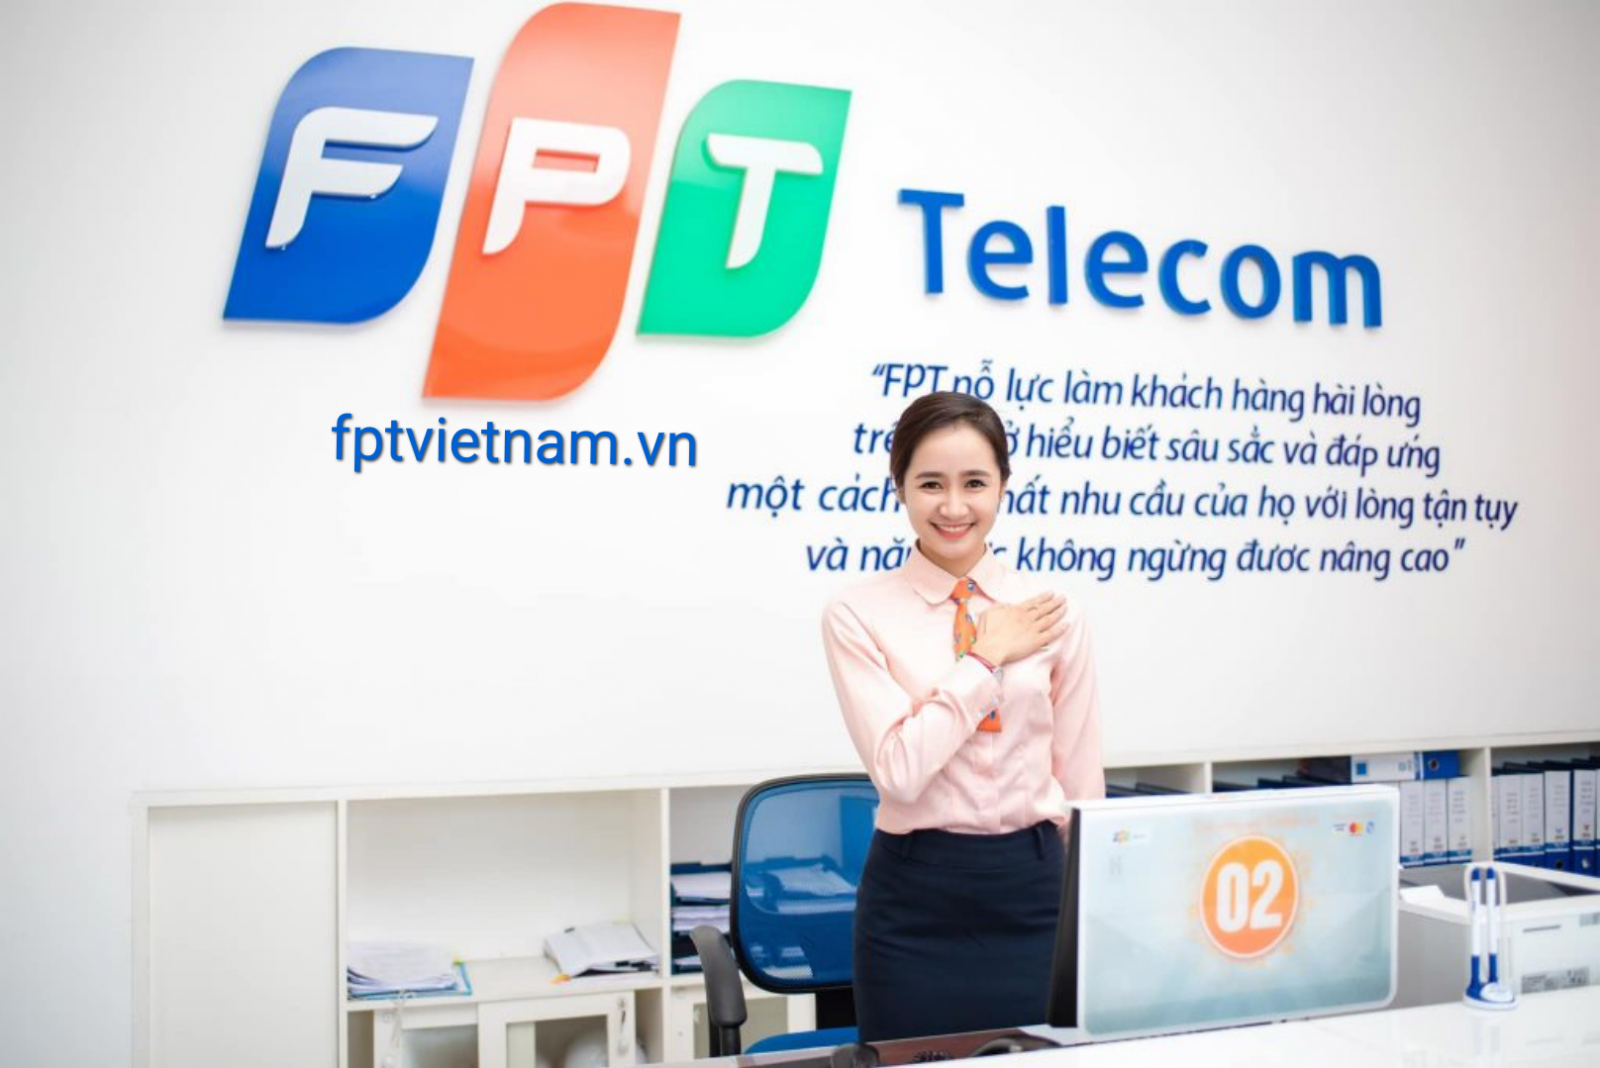 dịch vụ fpt telecom Quảng Nam